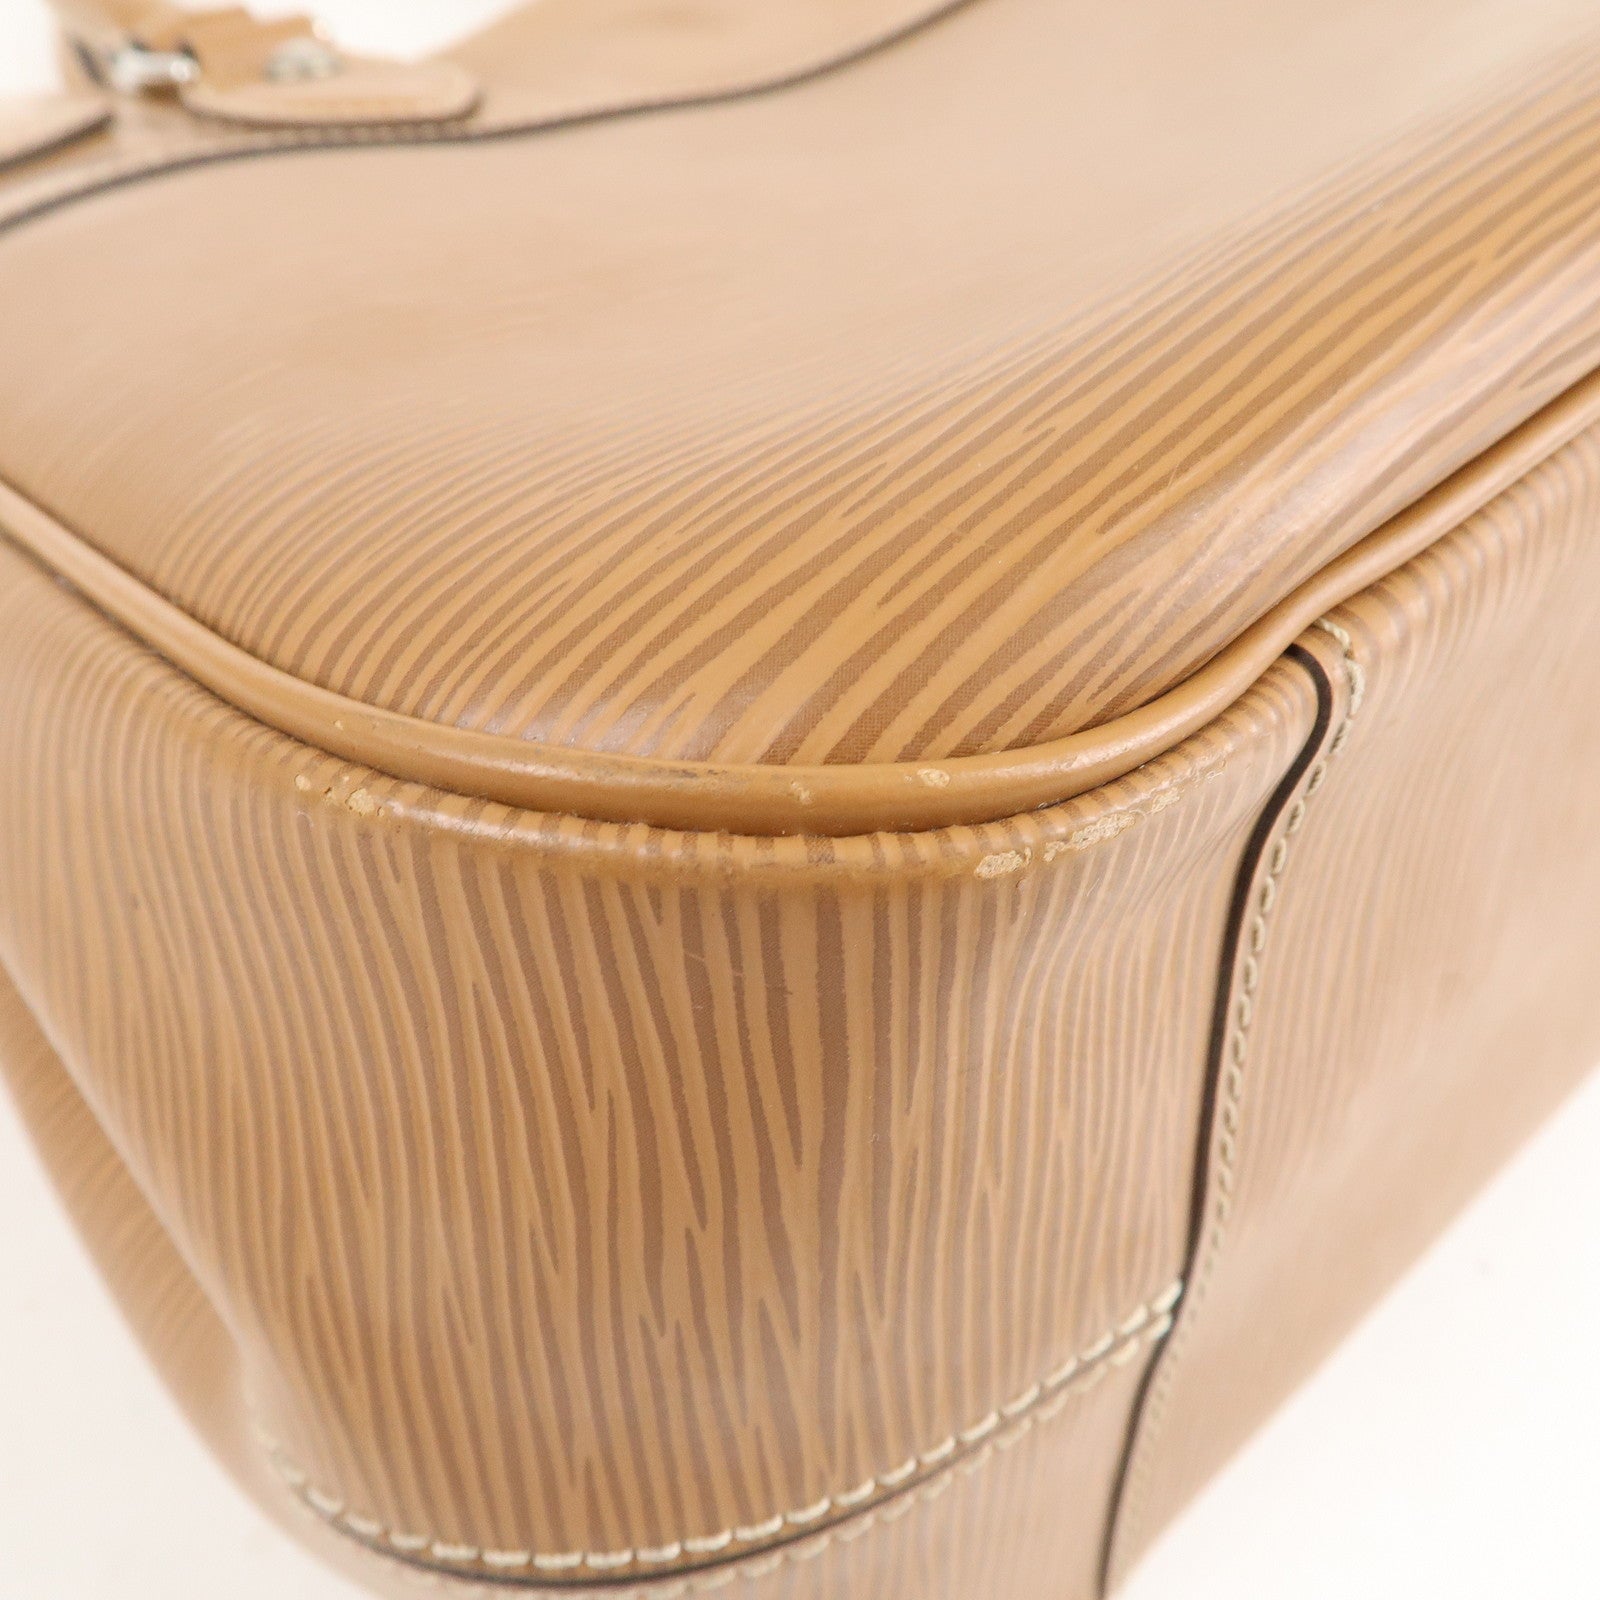 Louis Vuitton White Epi Leather Passy PM Bag 672lvs618 – Bagriculture